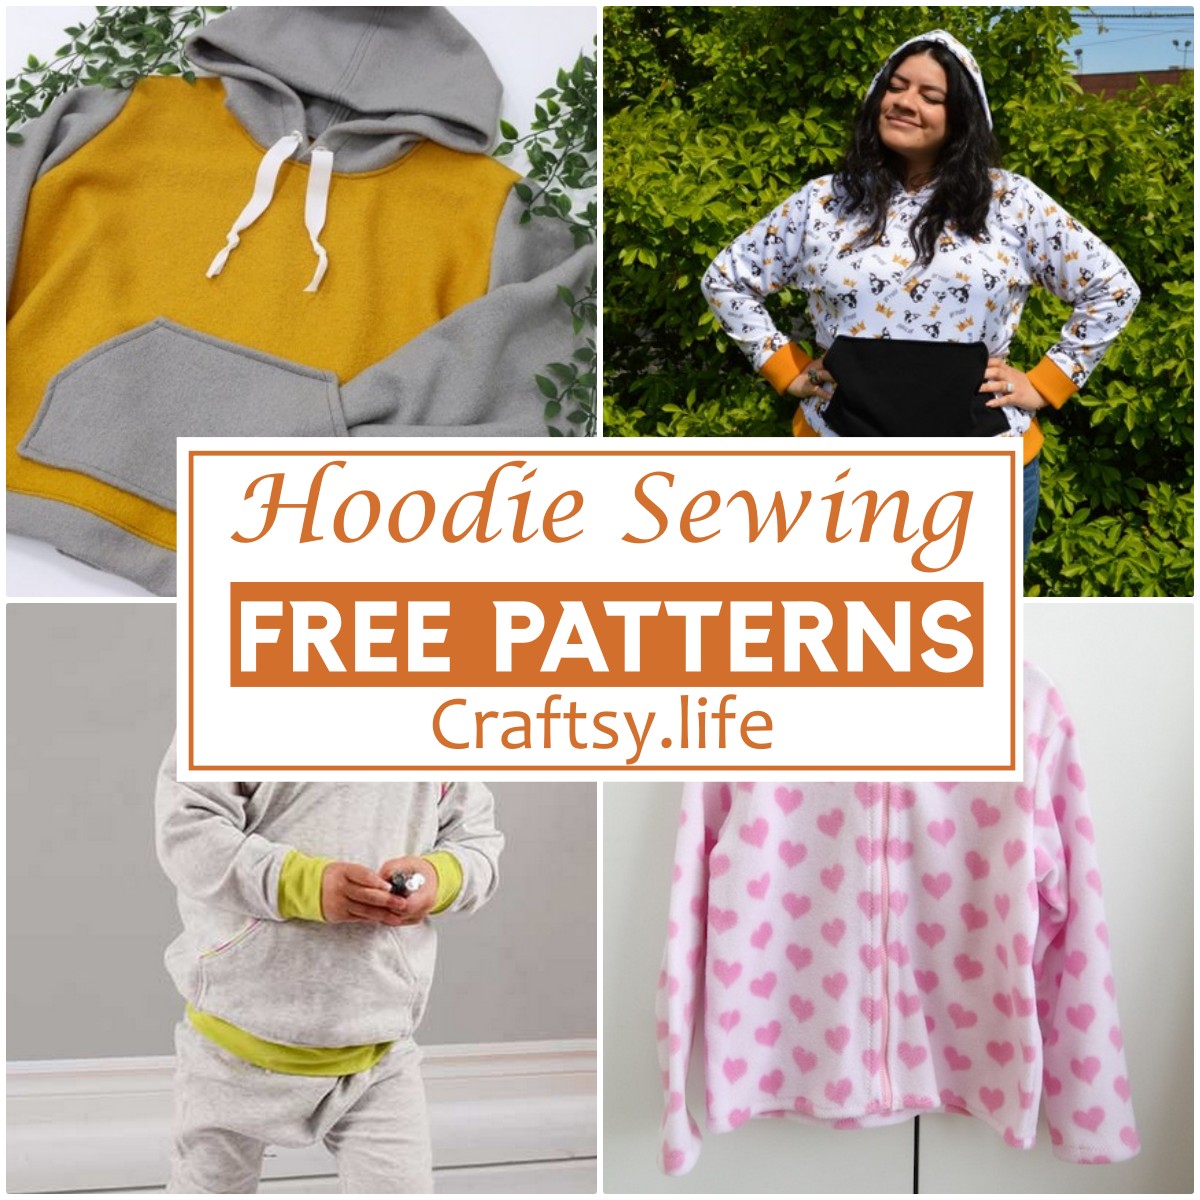 Free Hoodie Sewing Patterns